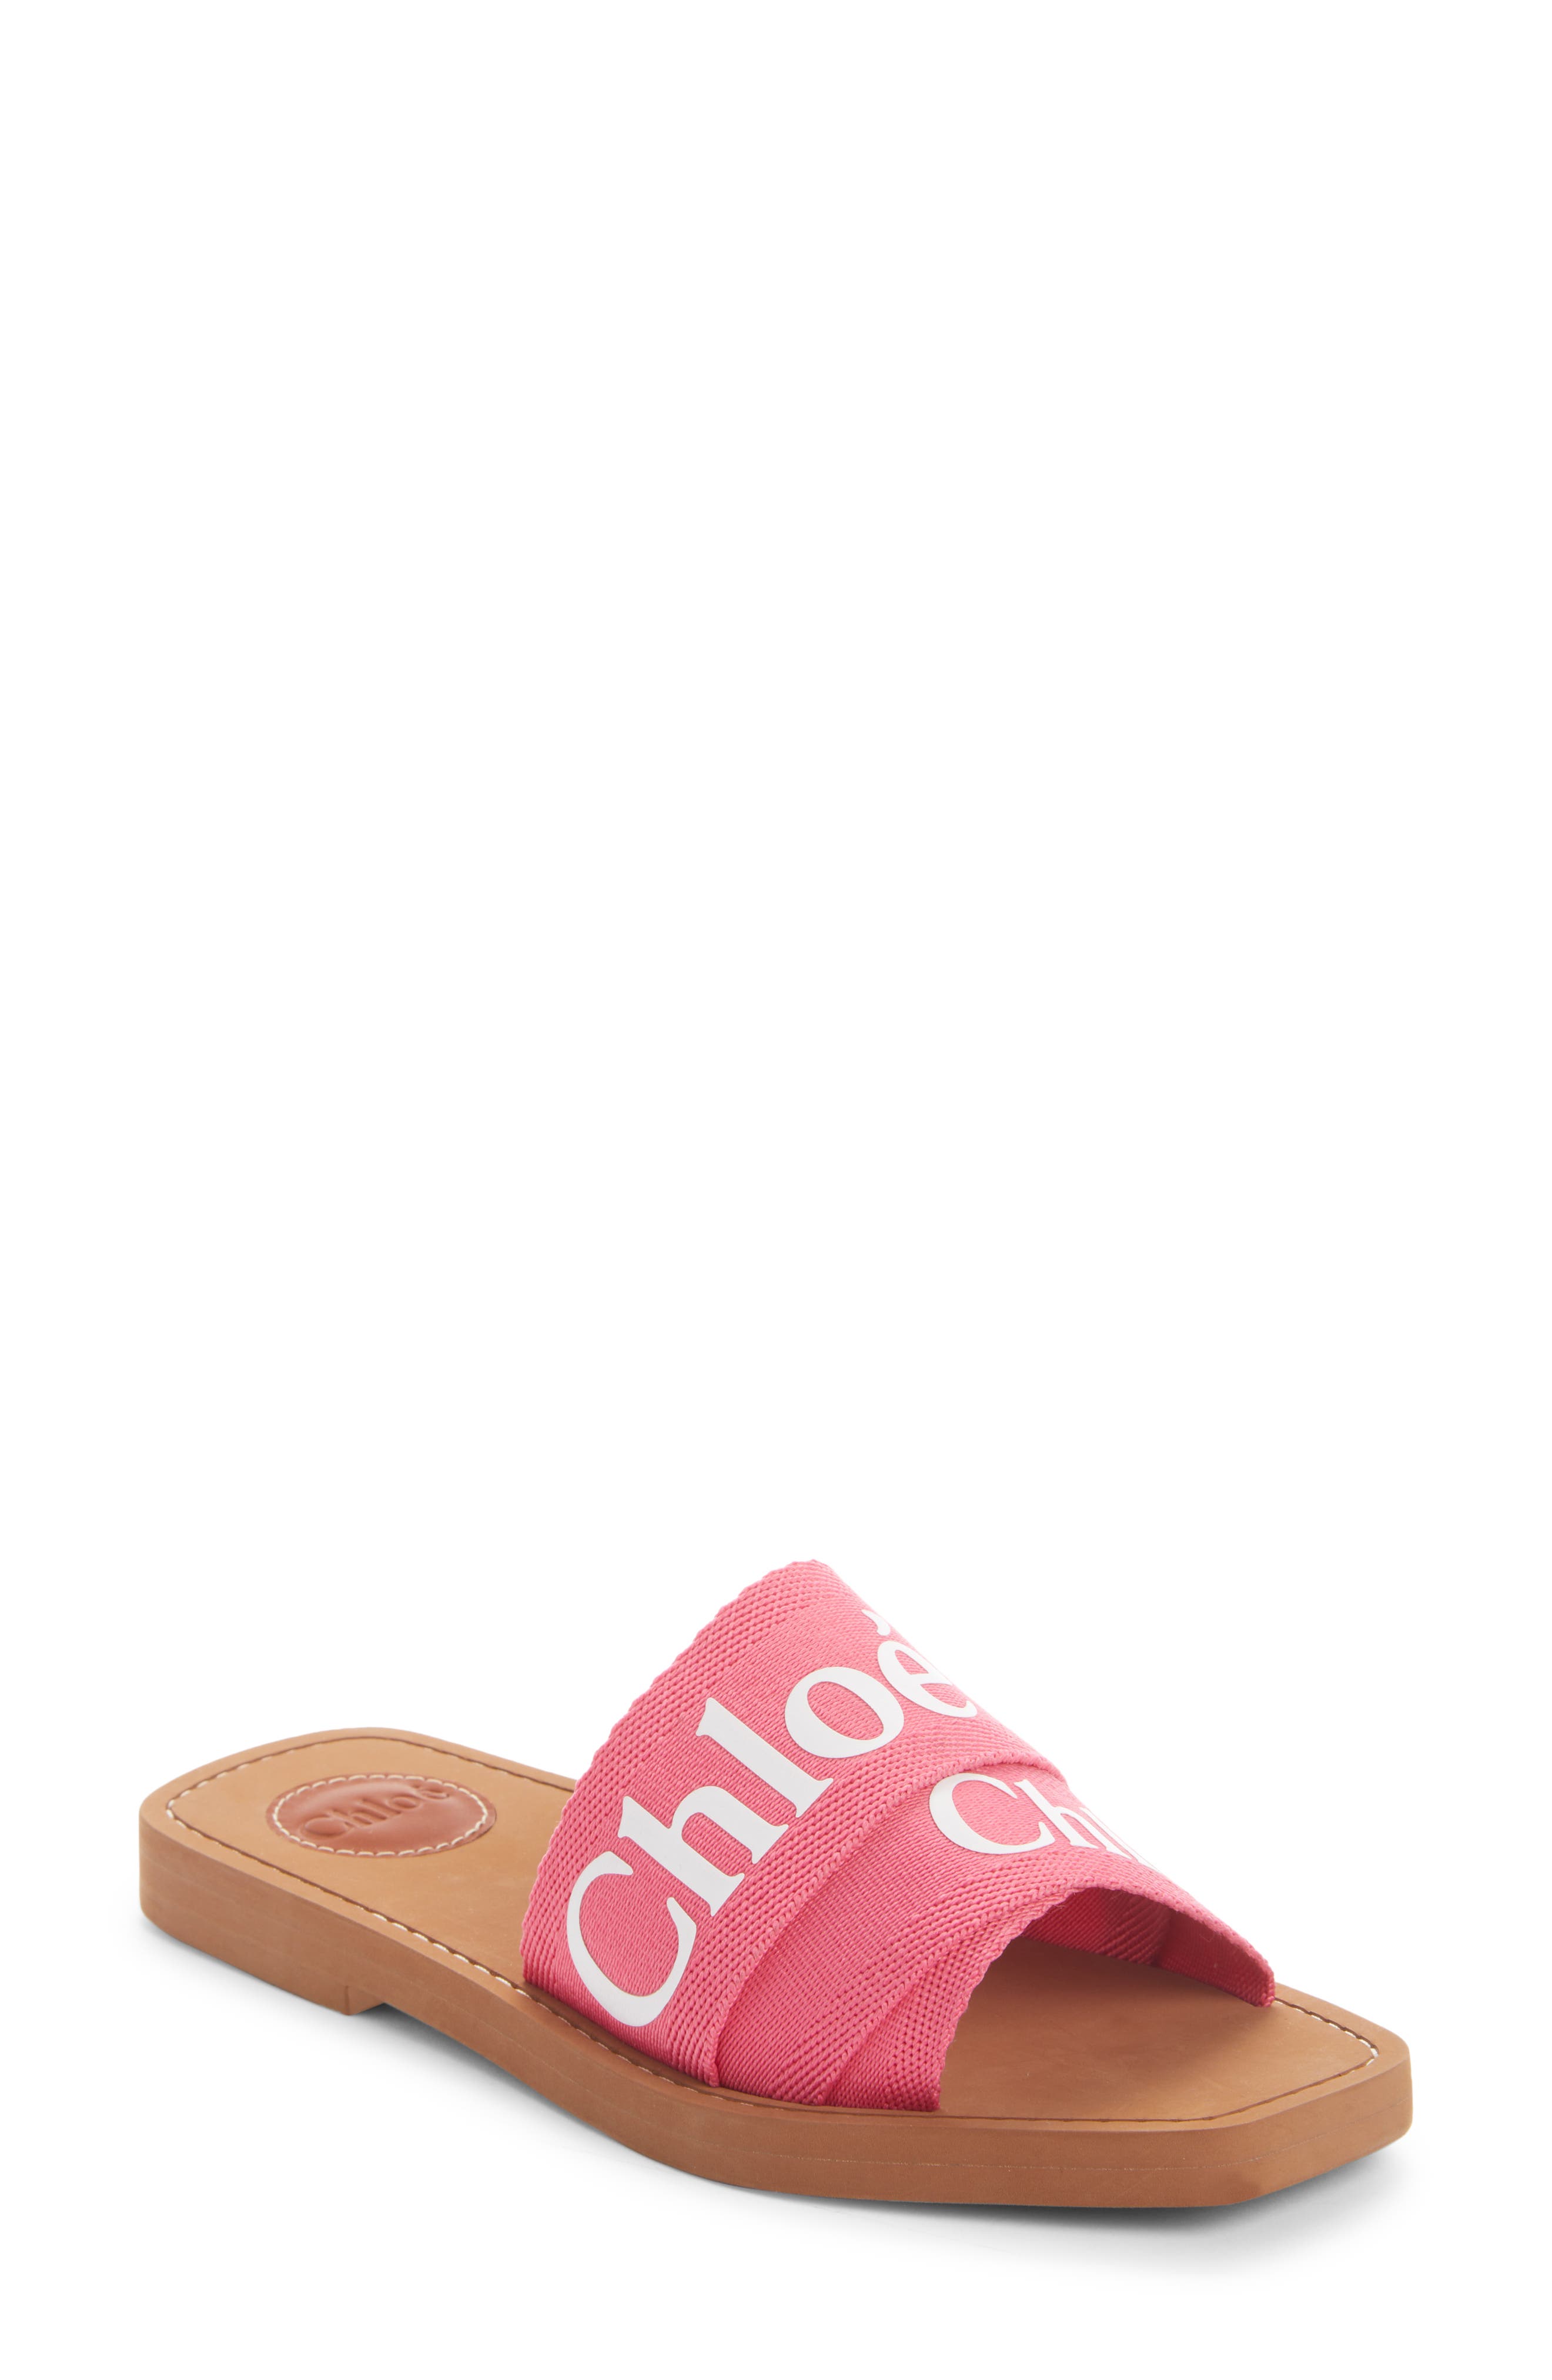 Chloe Logo Slide Sandal in Pink